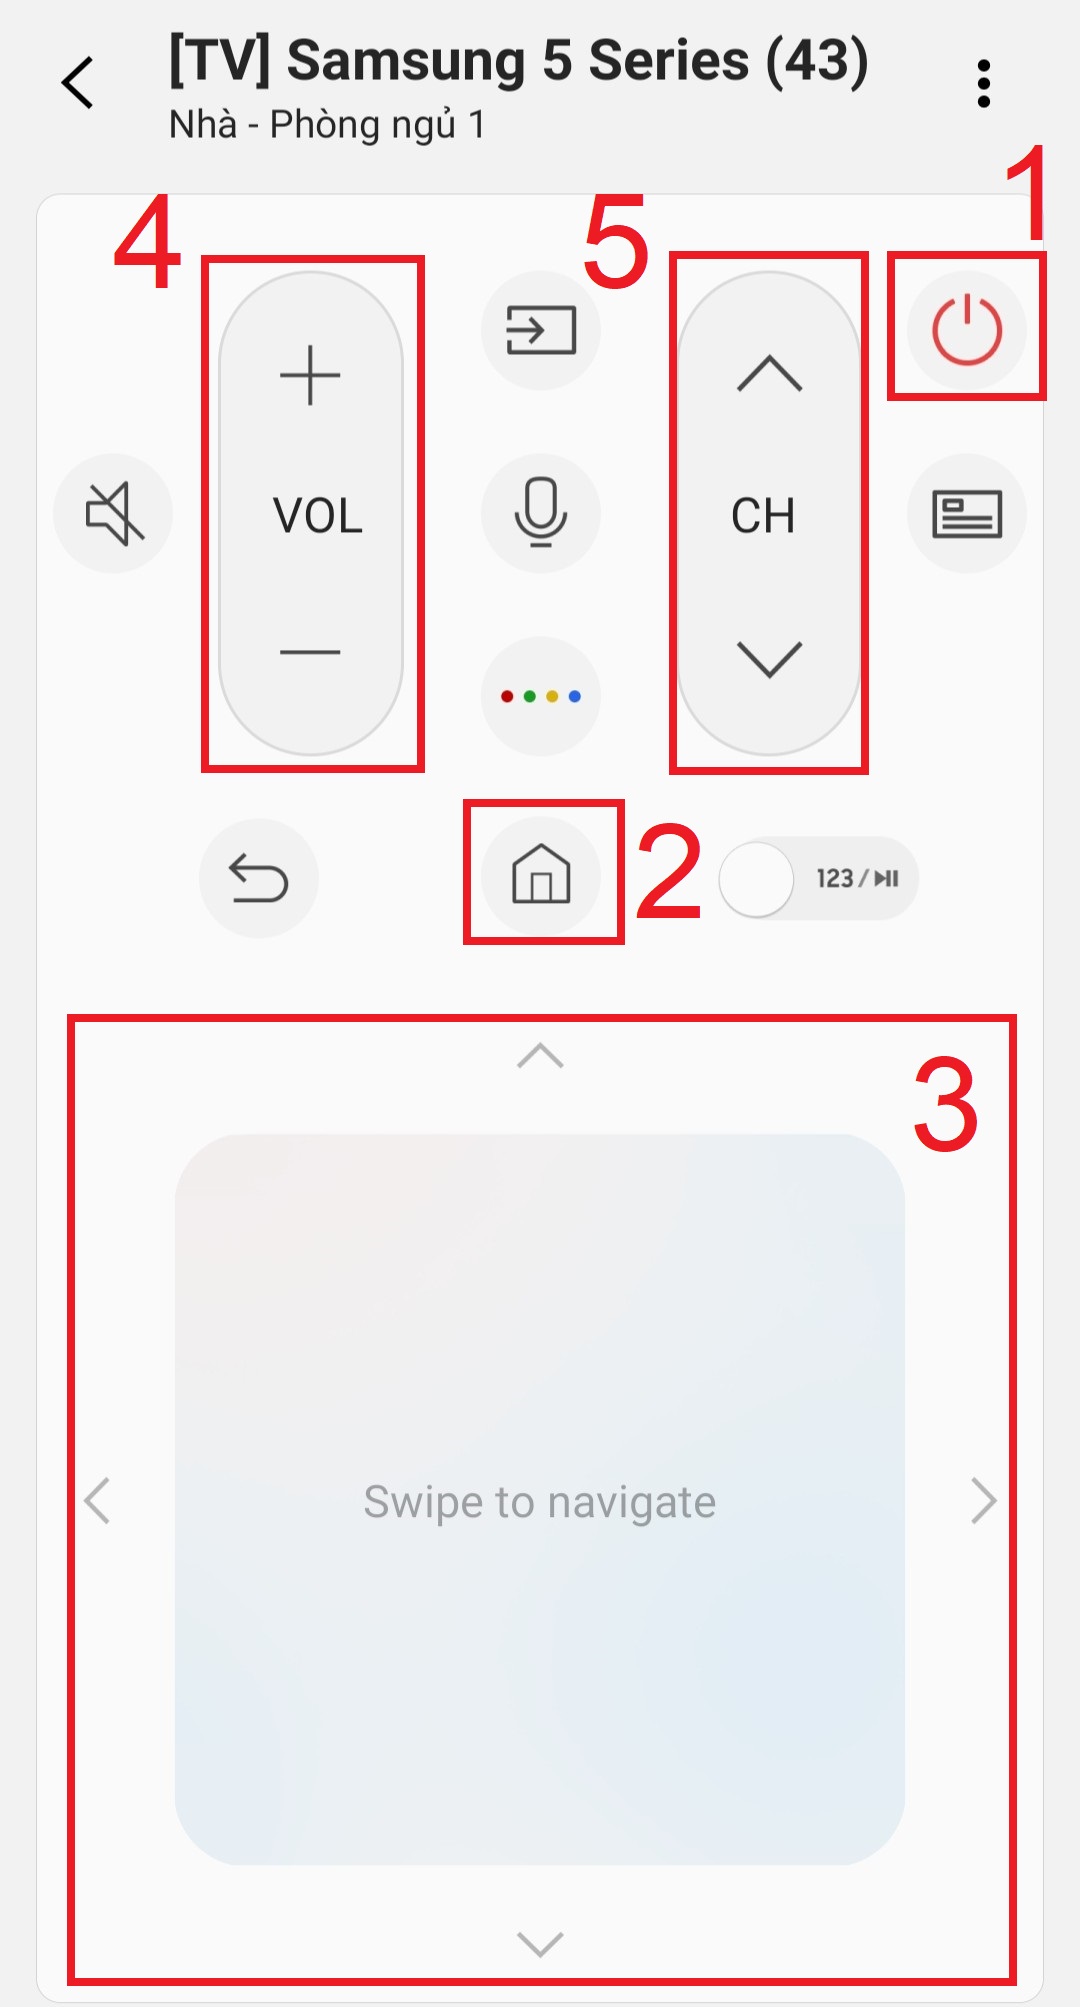 Hướng dẫn sử dụng ứng dụng SmartThings điều khiển Smart tivi Samsung > Sau khi kết nối xong giao diện chính của bộ điều khiển tivi với đầy đủ các nút